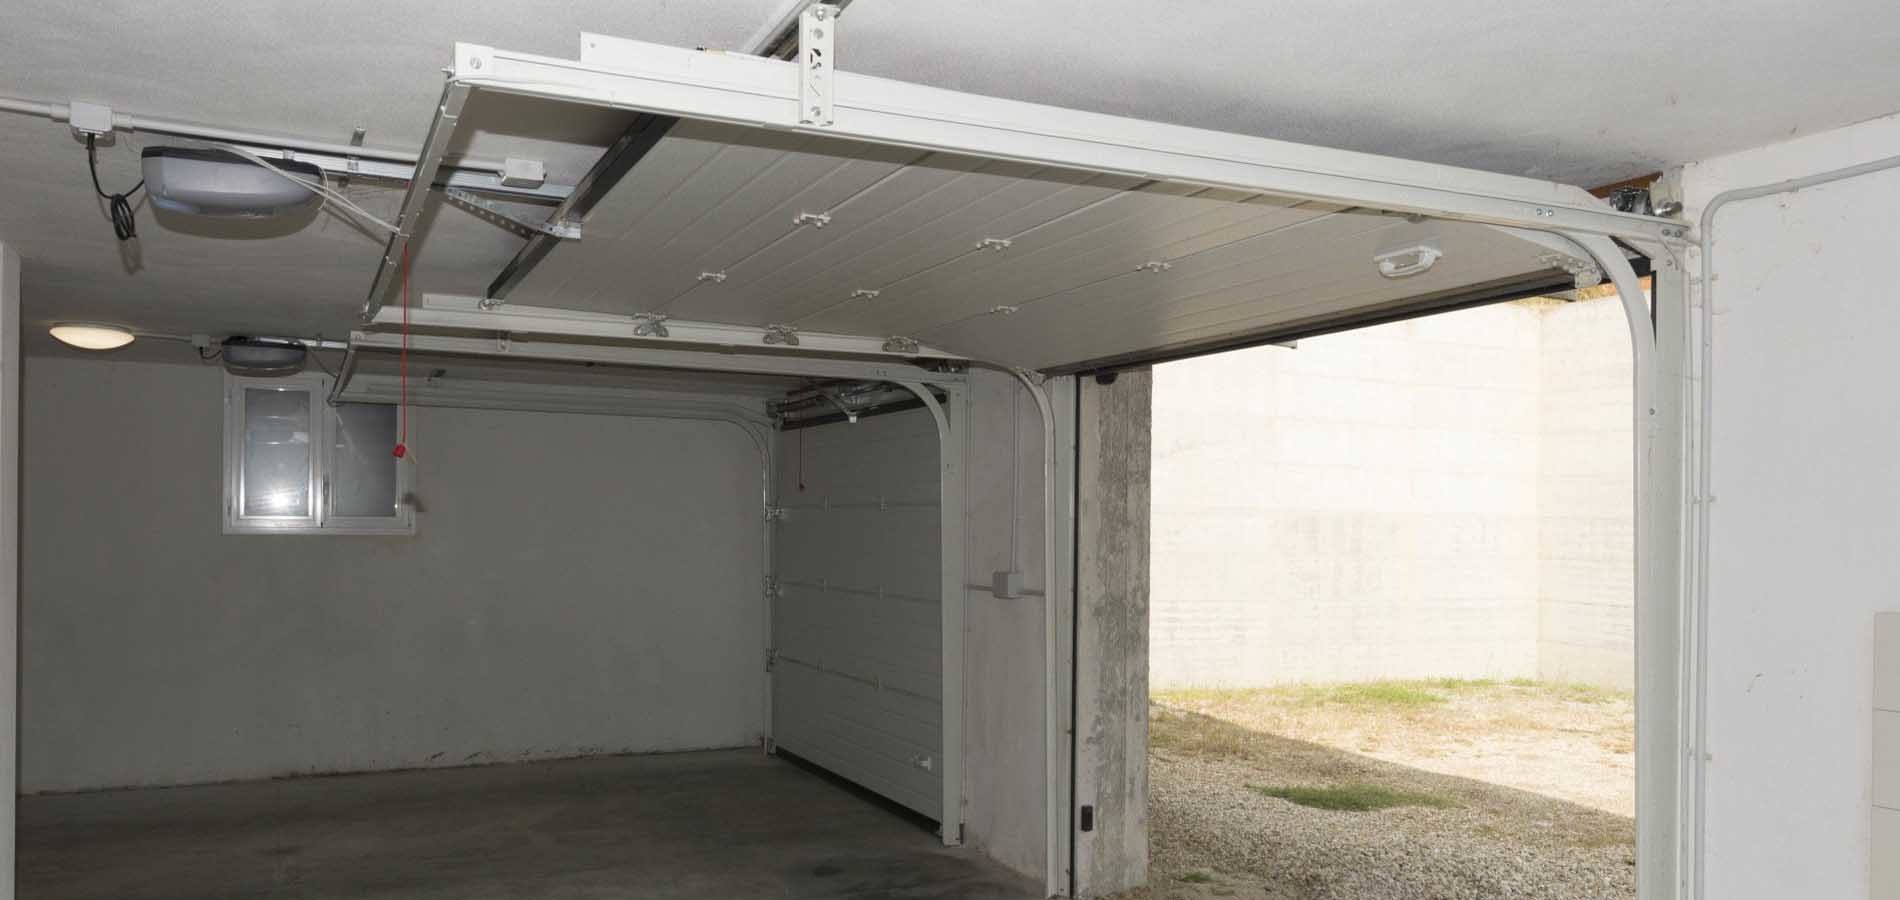 Scopri di più sull'articolo Portoni sezionali per garage